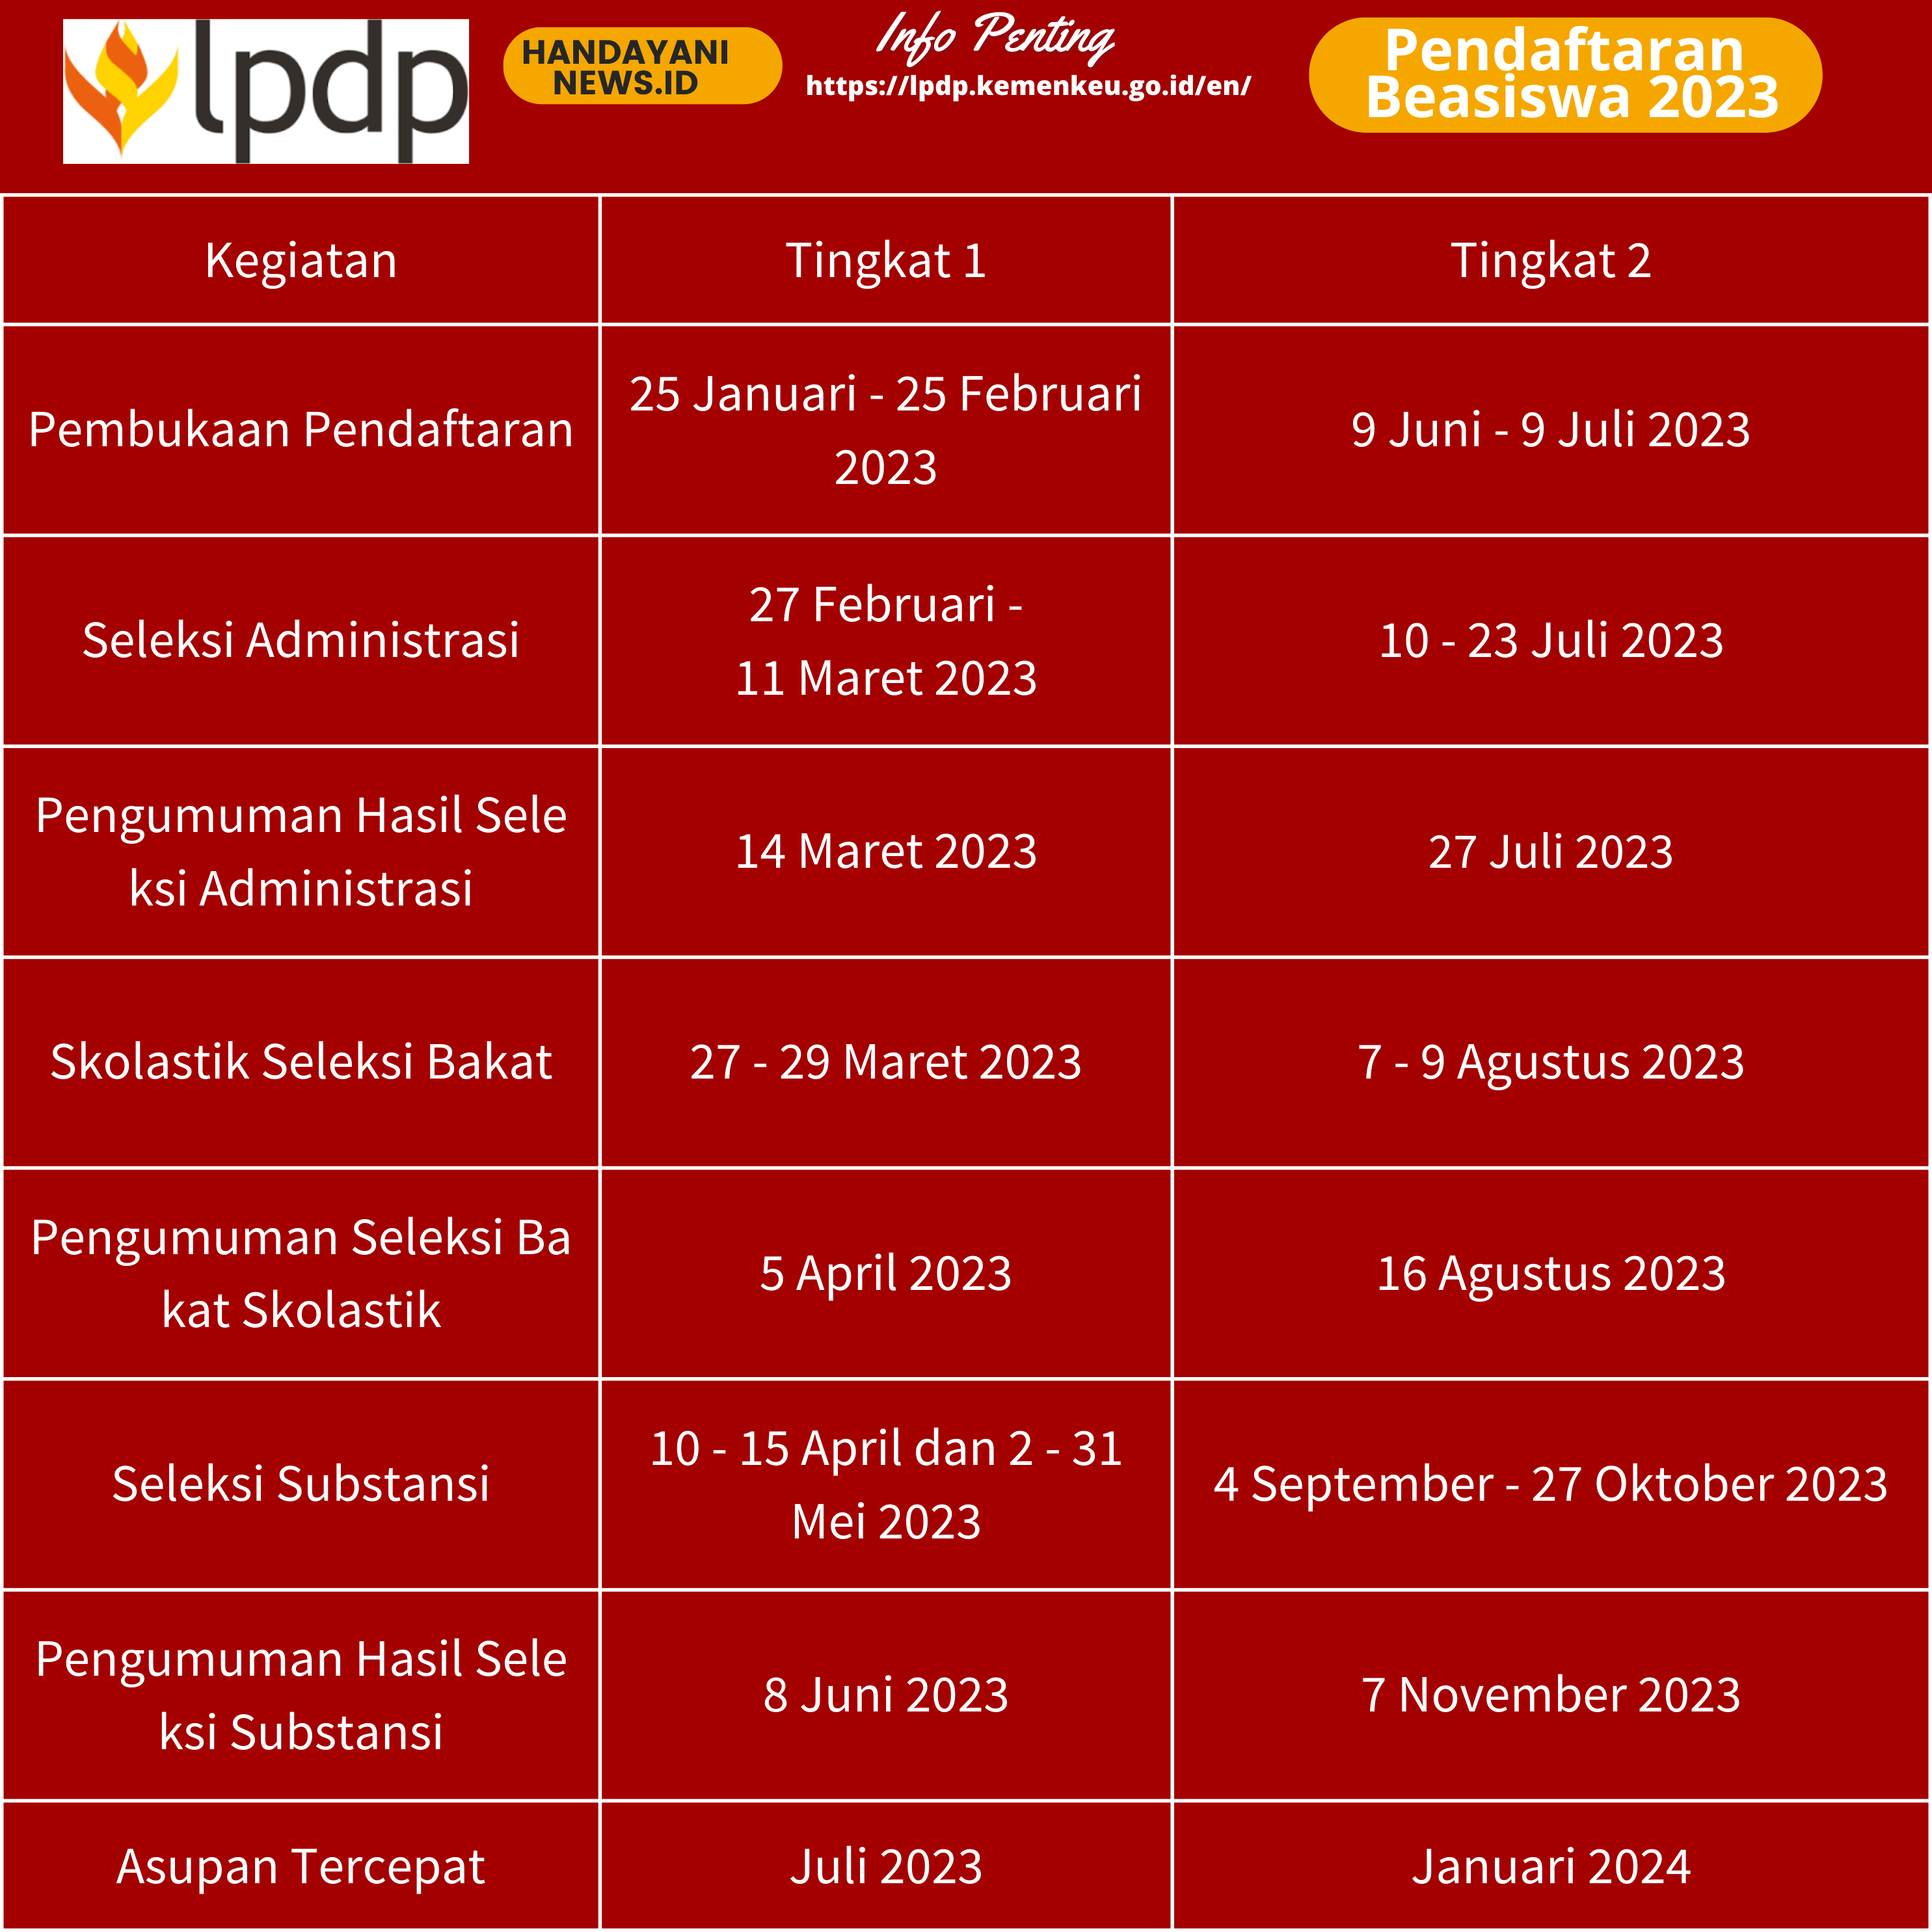 Jadwal Pendaftaran dan Seleksi Beasiswa LPDP 2023 - HANDAYANI NEWS ID